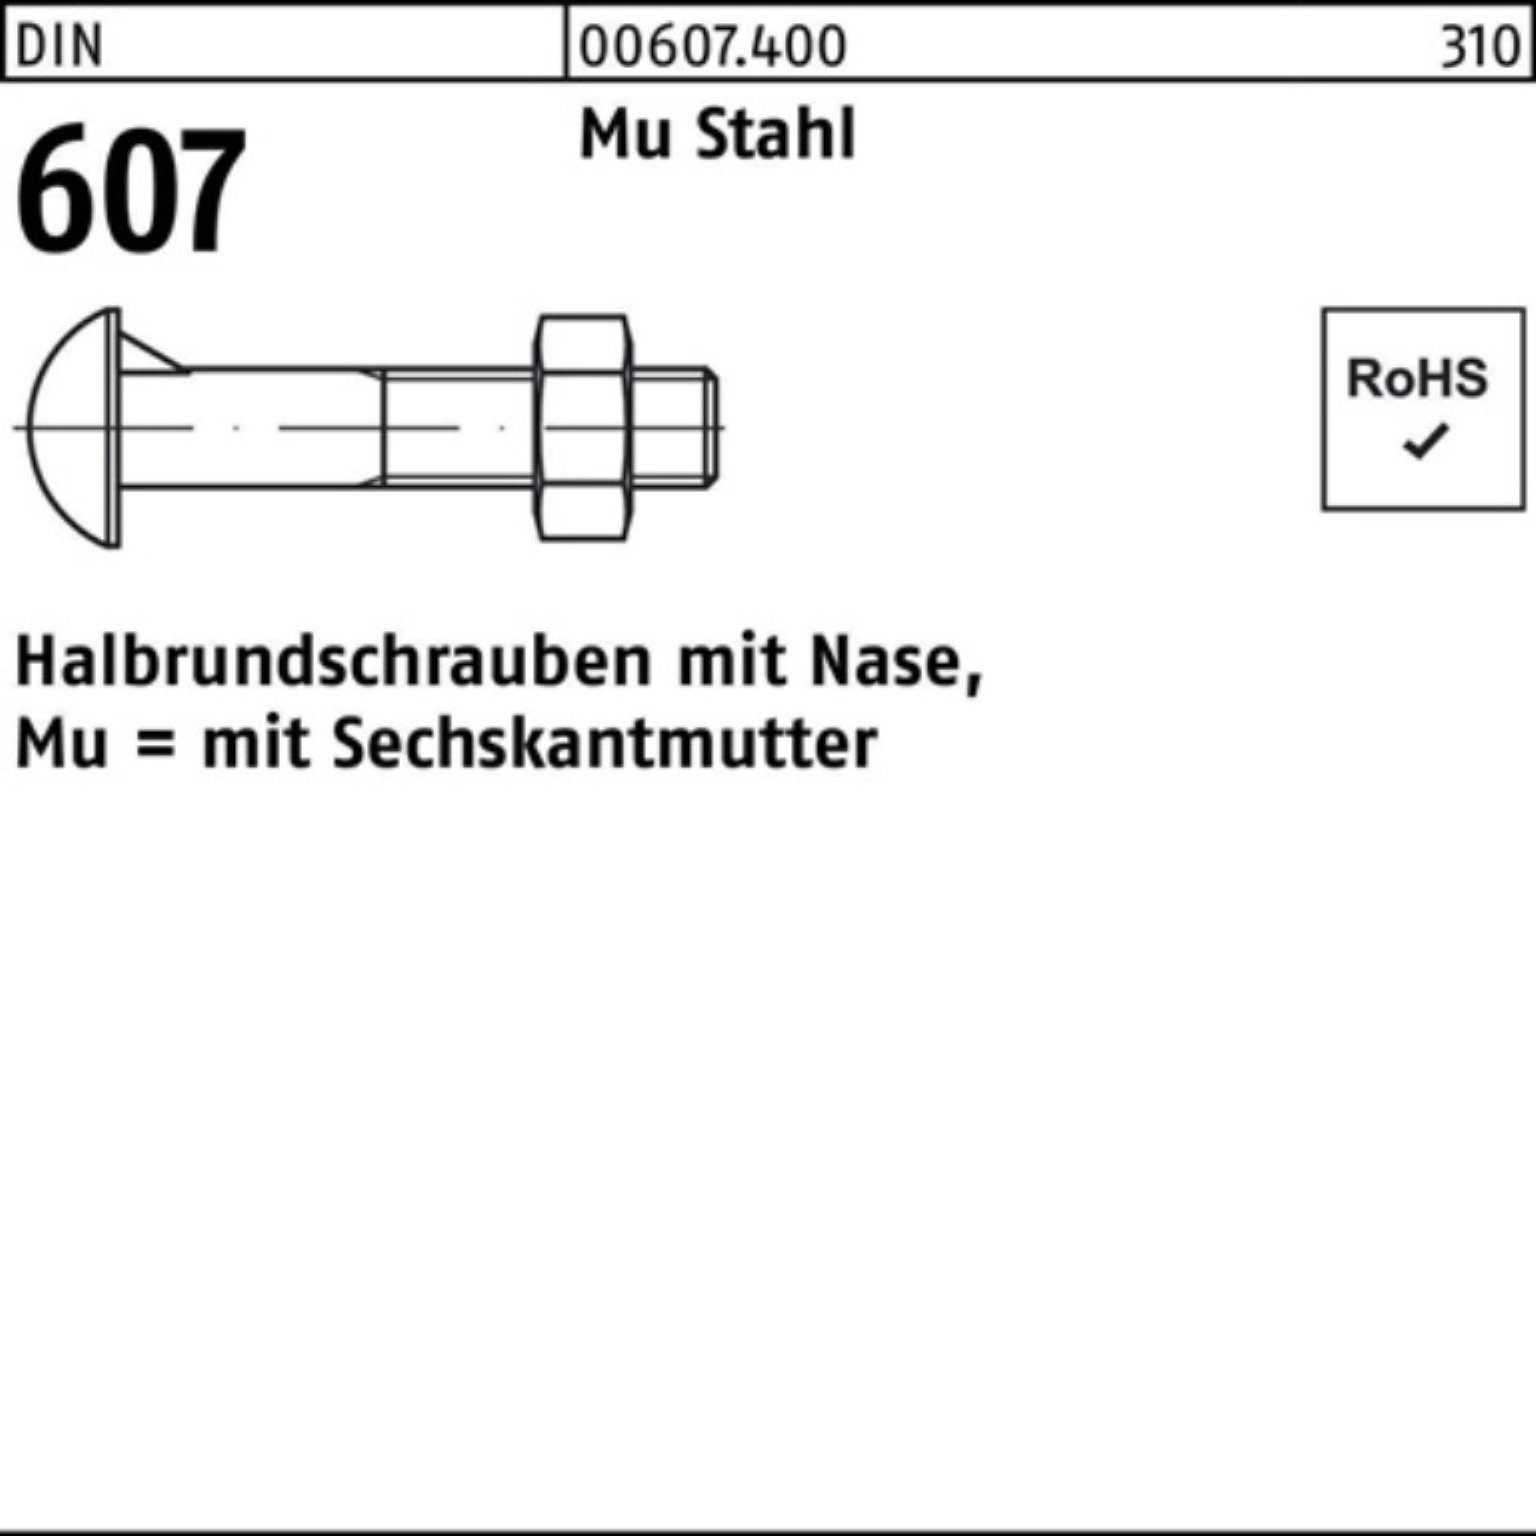 Reyher Schraube 100er Pack Halbrundschraube DIN 607 Nase/6-ktmutter M10x 40 Mu Stahl 4